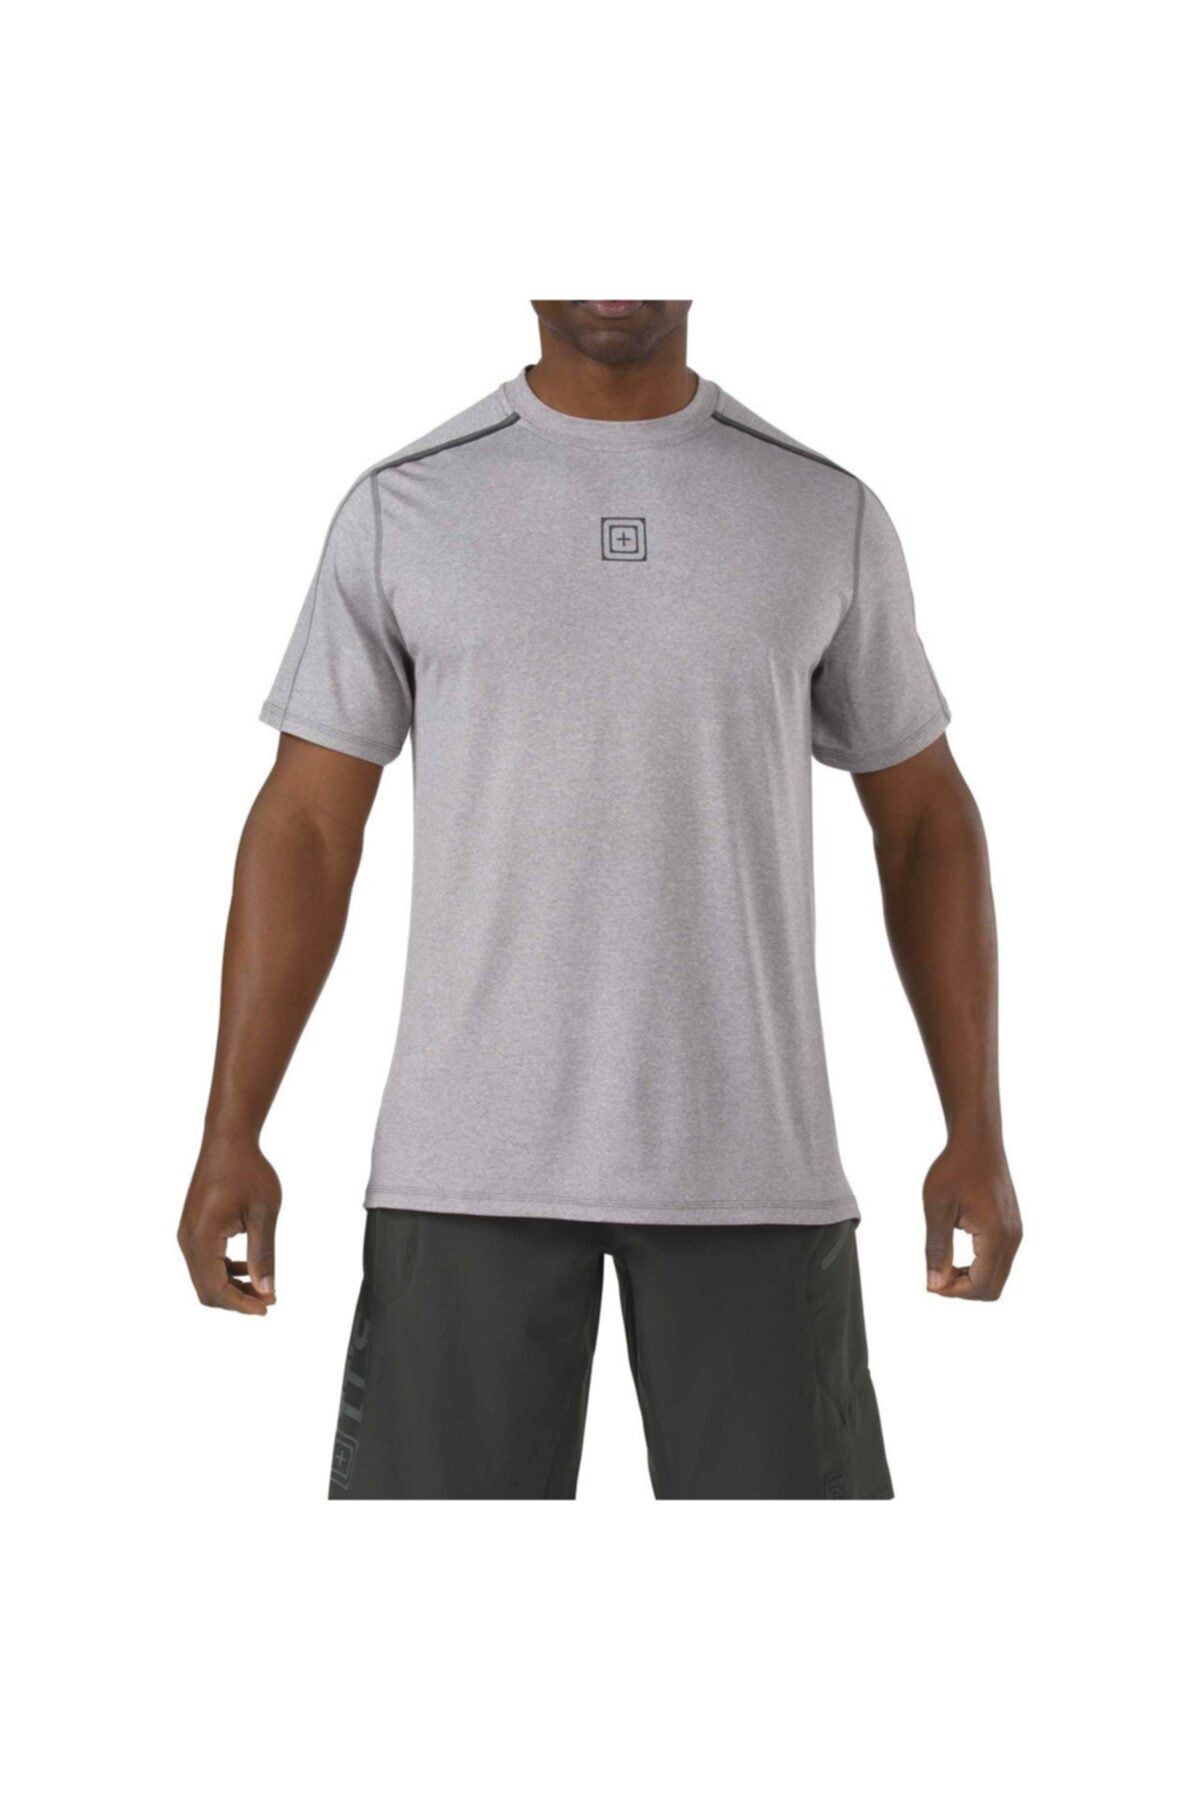 5.11 Tactical Erkek Gri Kısa Kollu Spor Tshirt